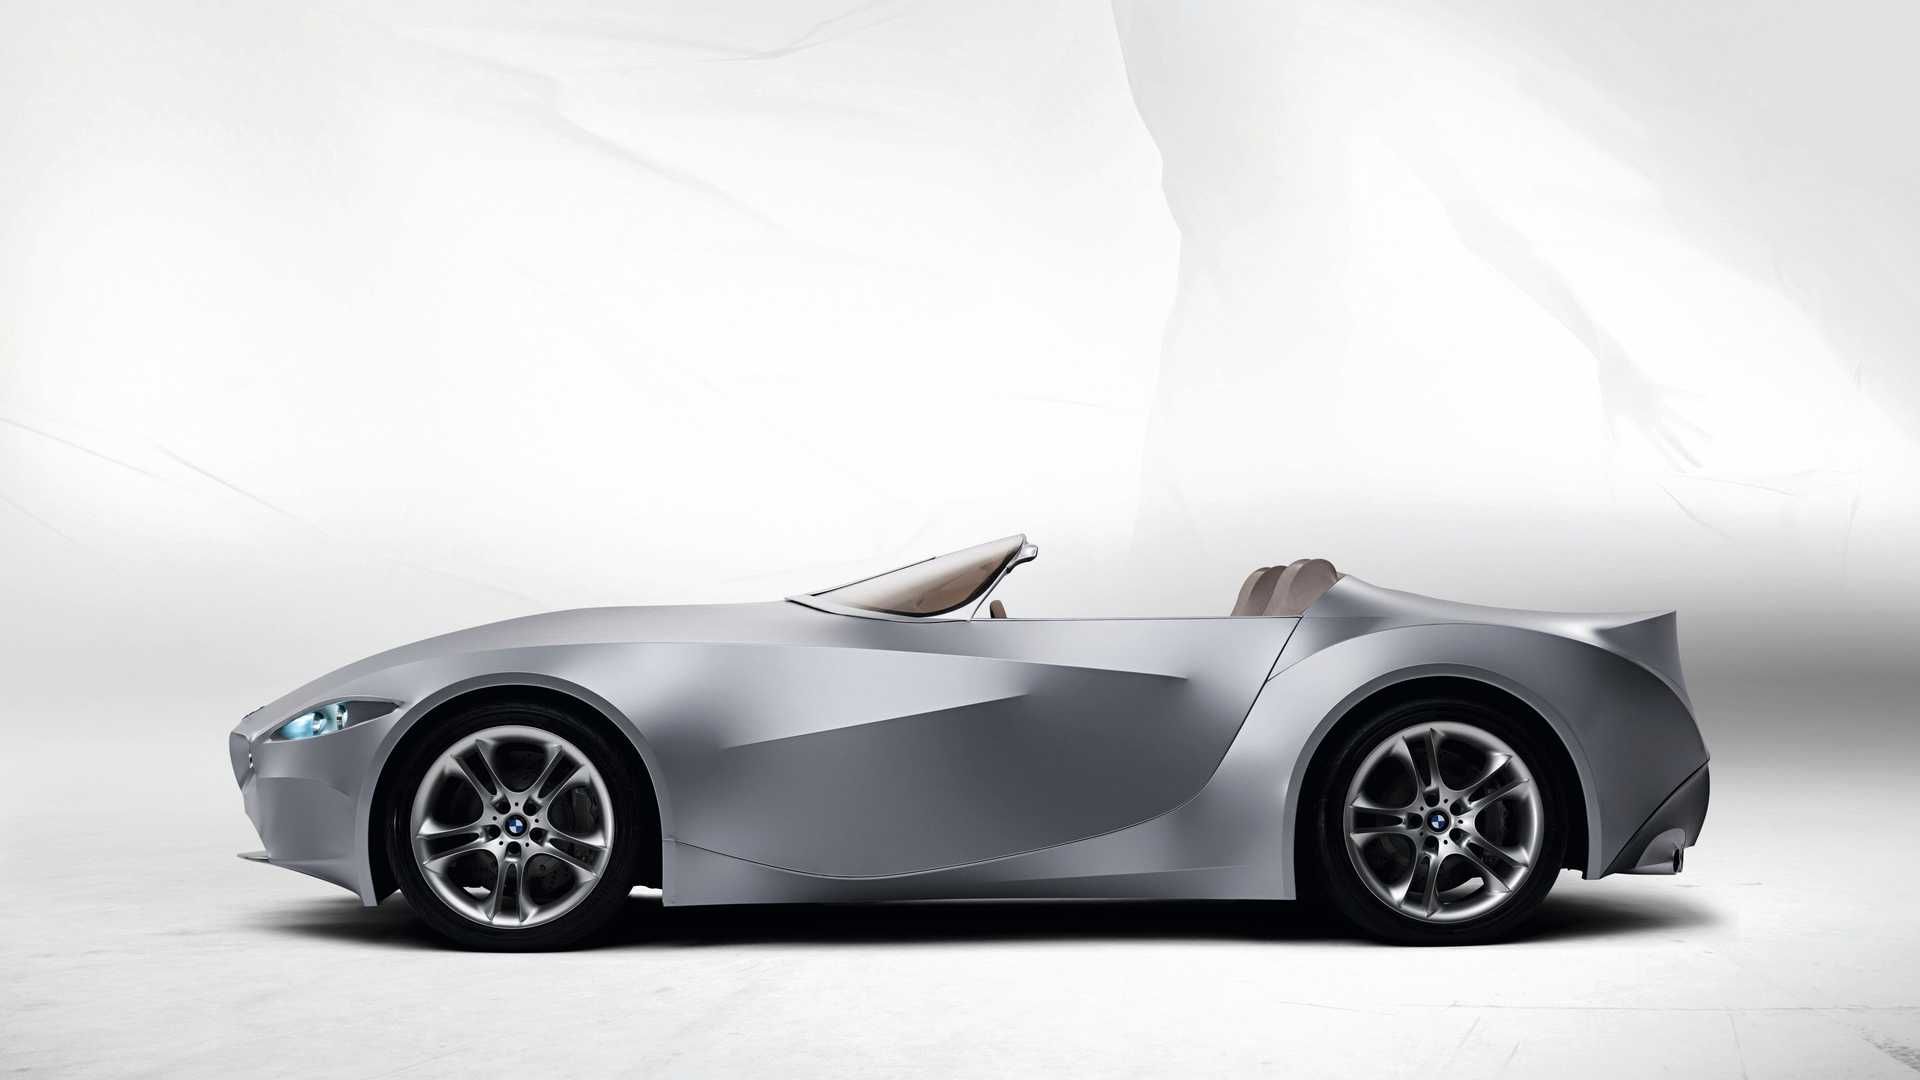 مرجع متخصصين ايران نماي جانبي خودروي مفهومي روباز بي ام و گينا / BMW GINA concept convertible